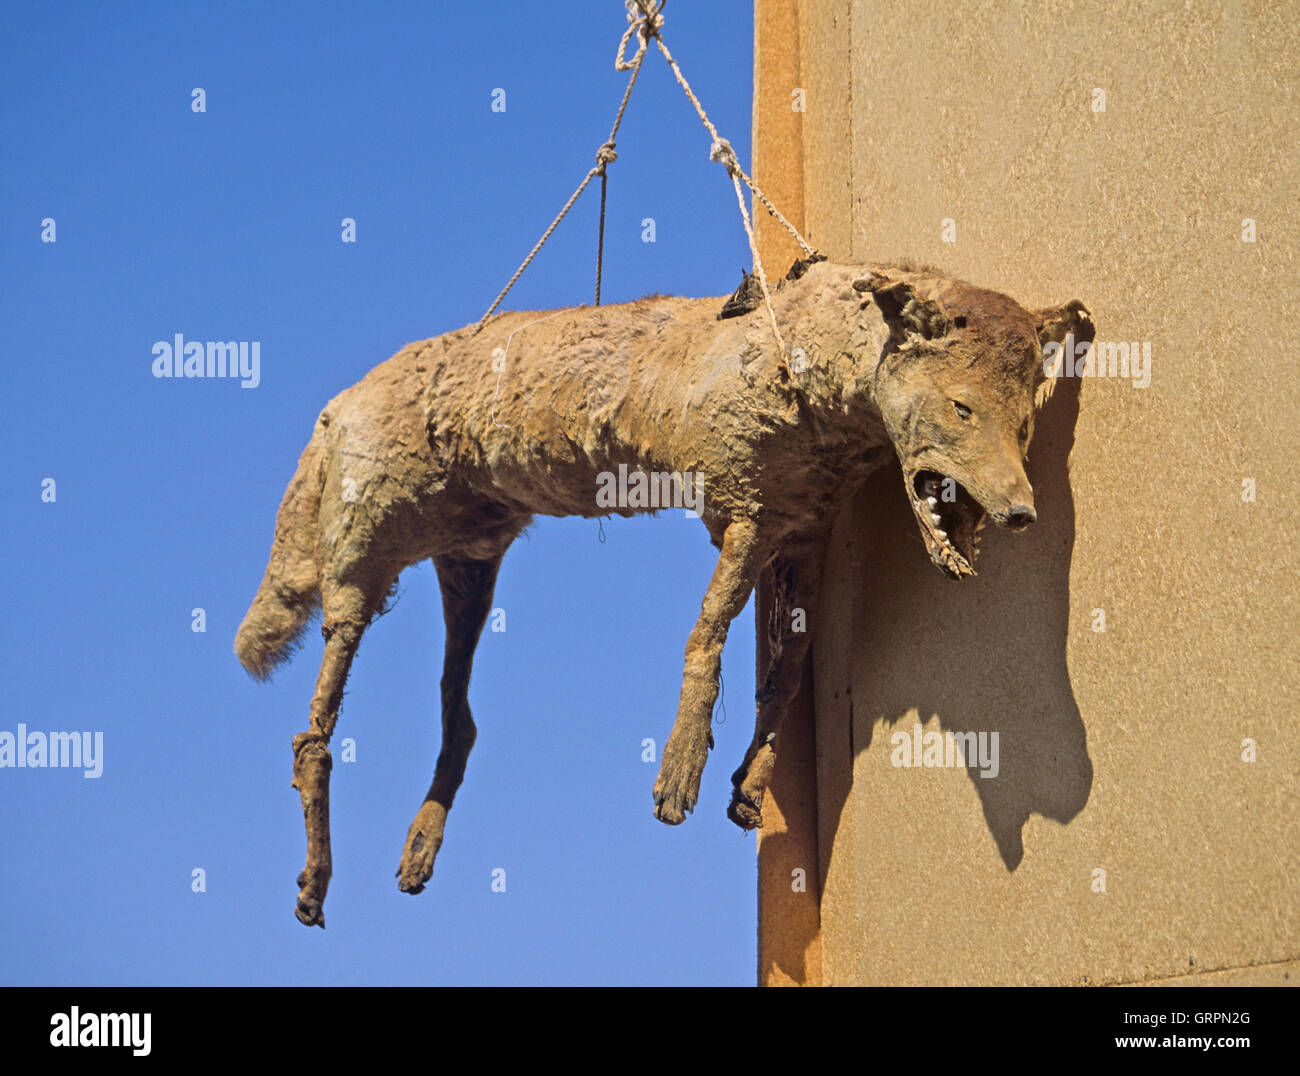 Desert wolf, Aswan, Upper Egypt Stock Photo